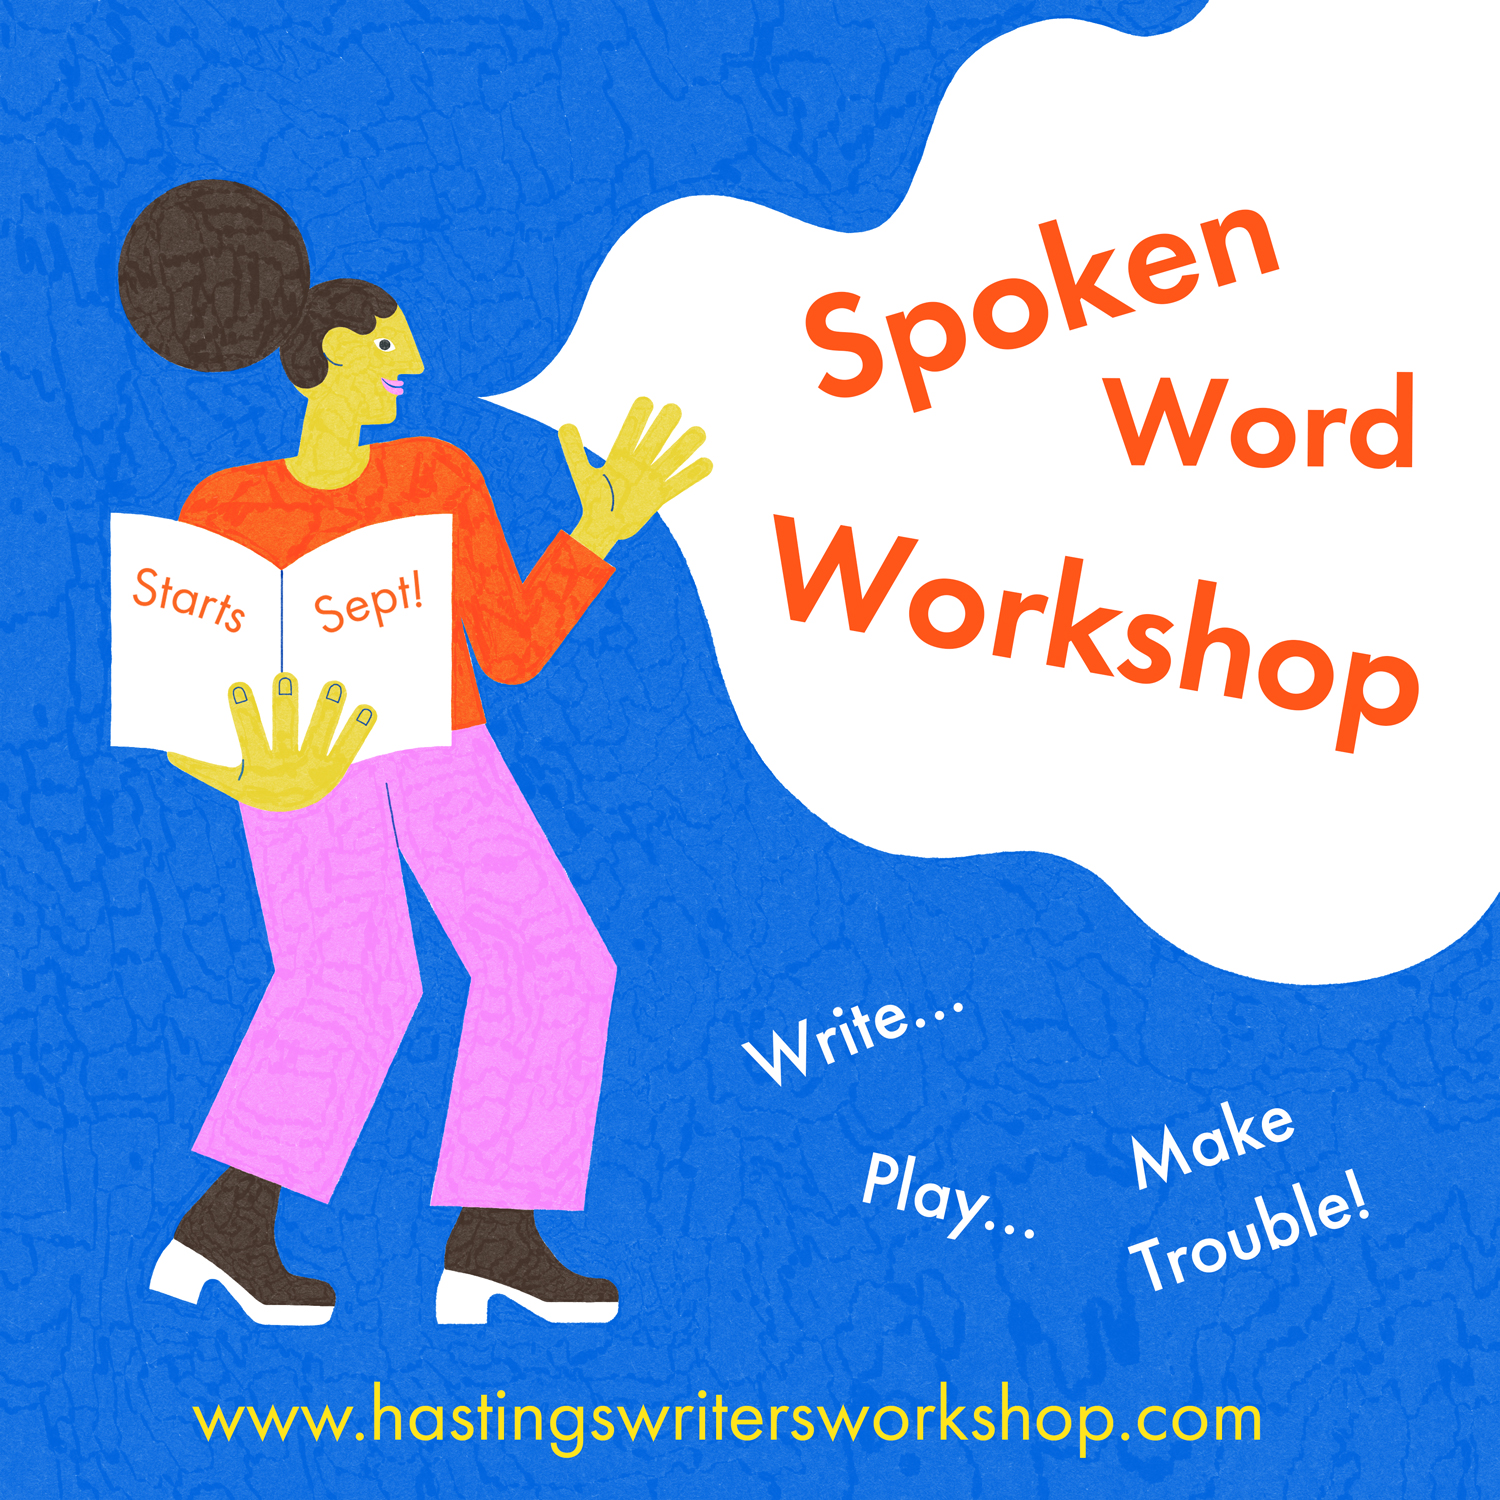 Woman on illustration with 'Spoken Word Workshop' speech bubble